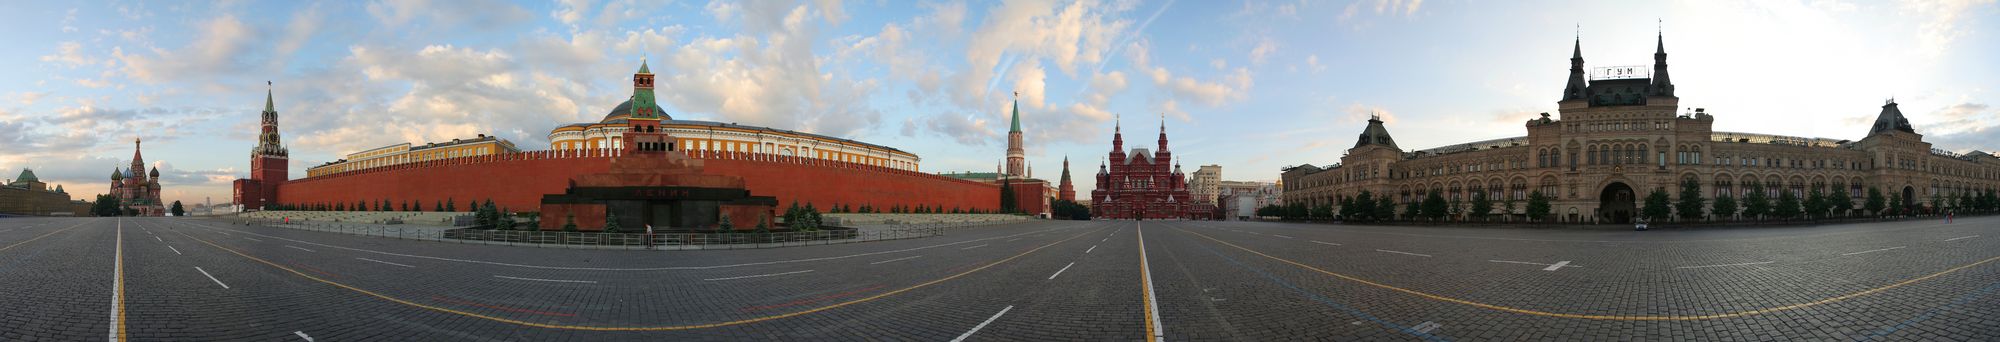 Panoramatický pohled na Rudé náměstí